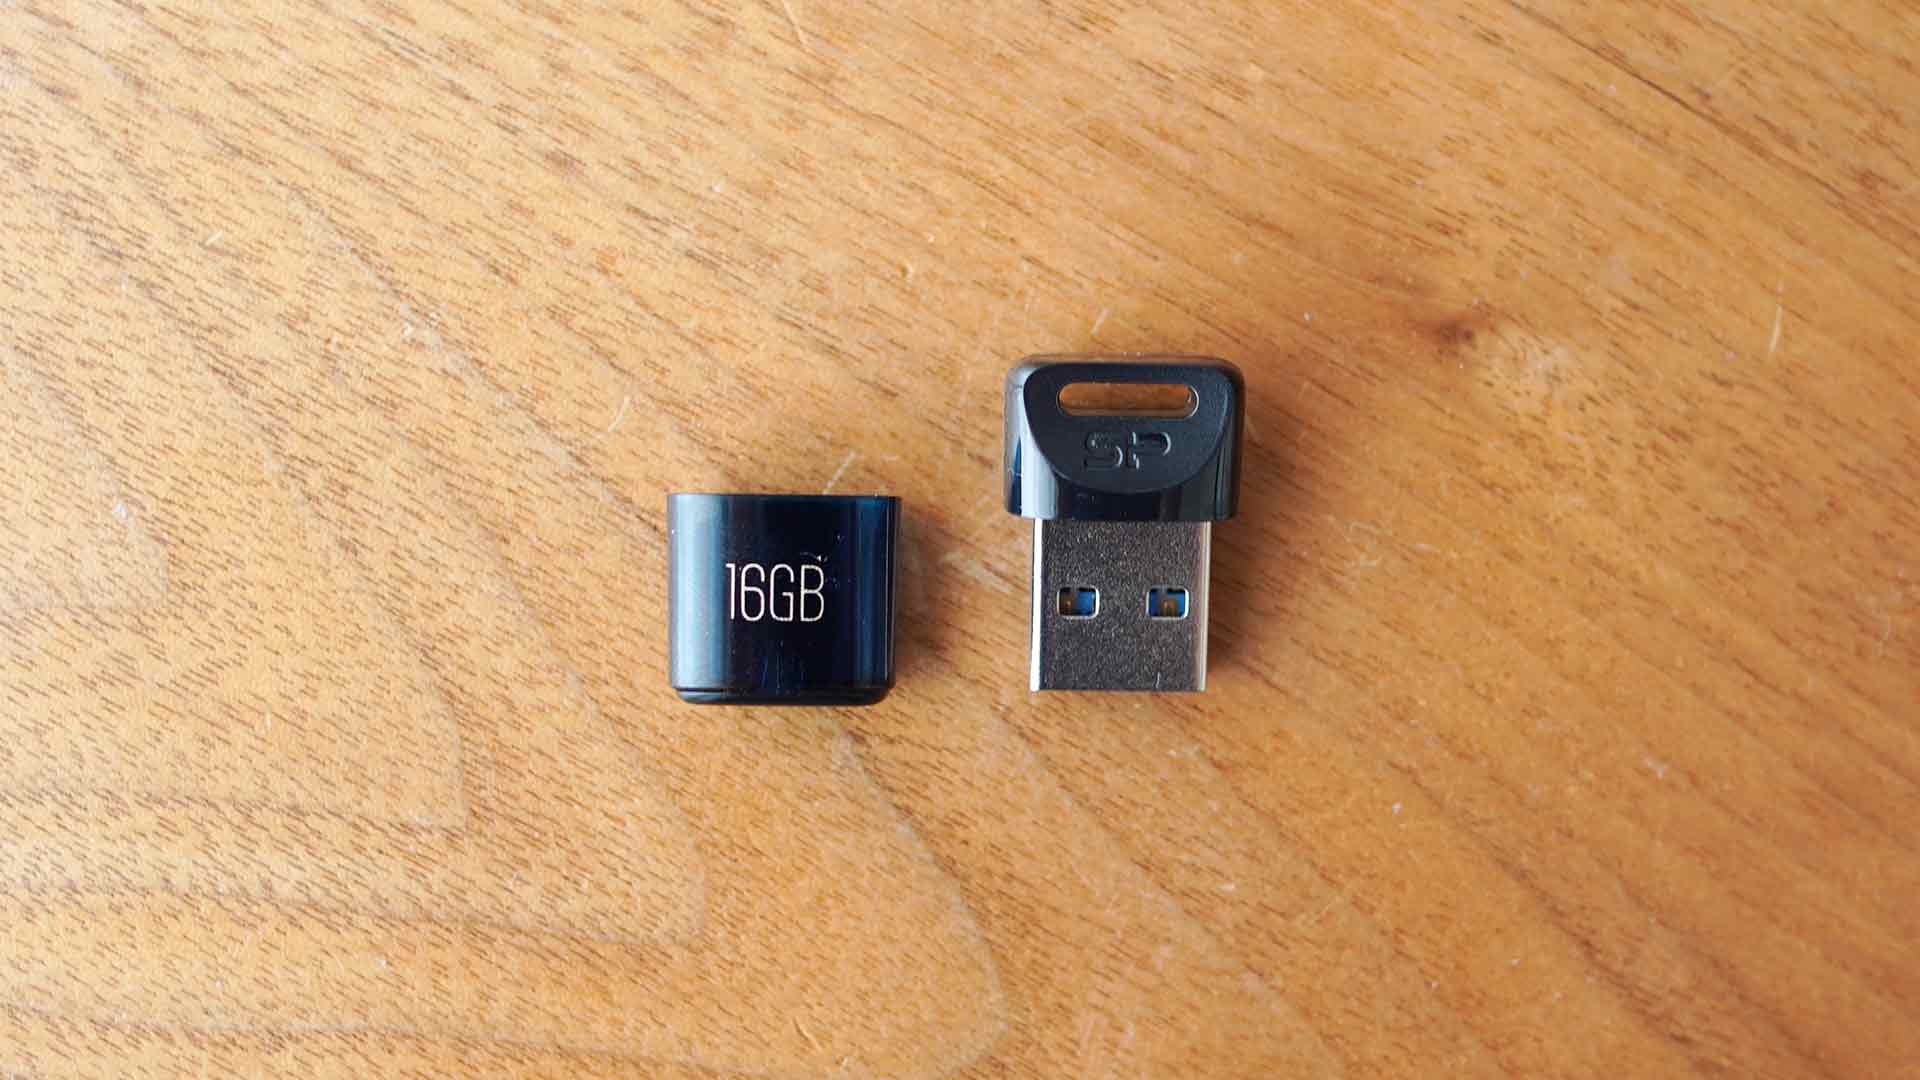 USBメモリー,シリコンパワー,小さい,コンパクト,軽い,安い,キャップ,J06